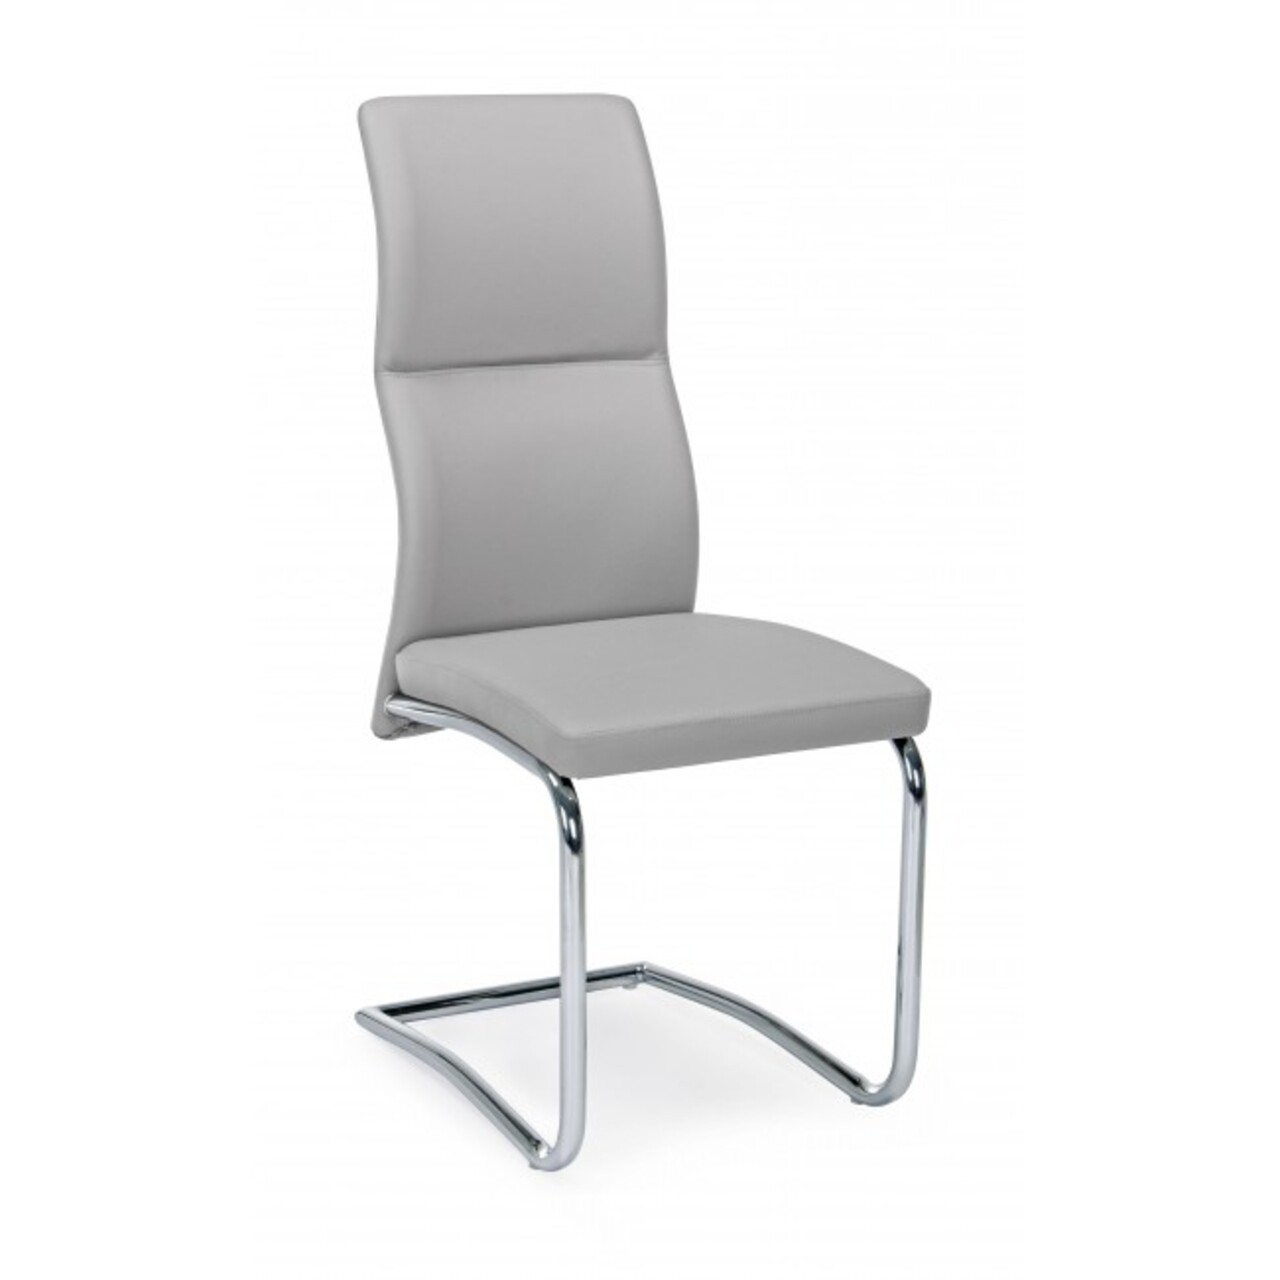 Thelma szék, bizzotto, 44x58x104 cm, világosszürke